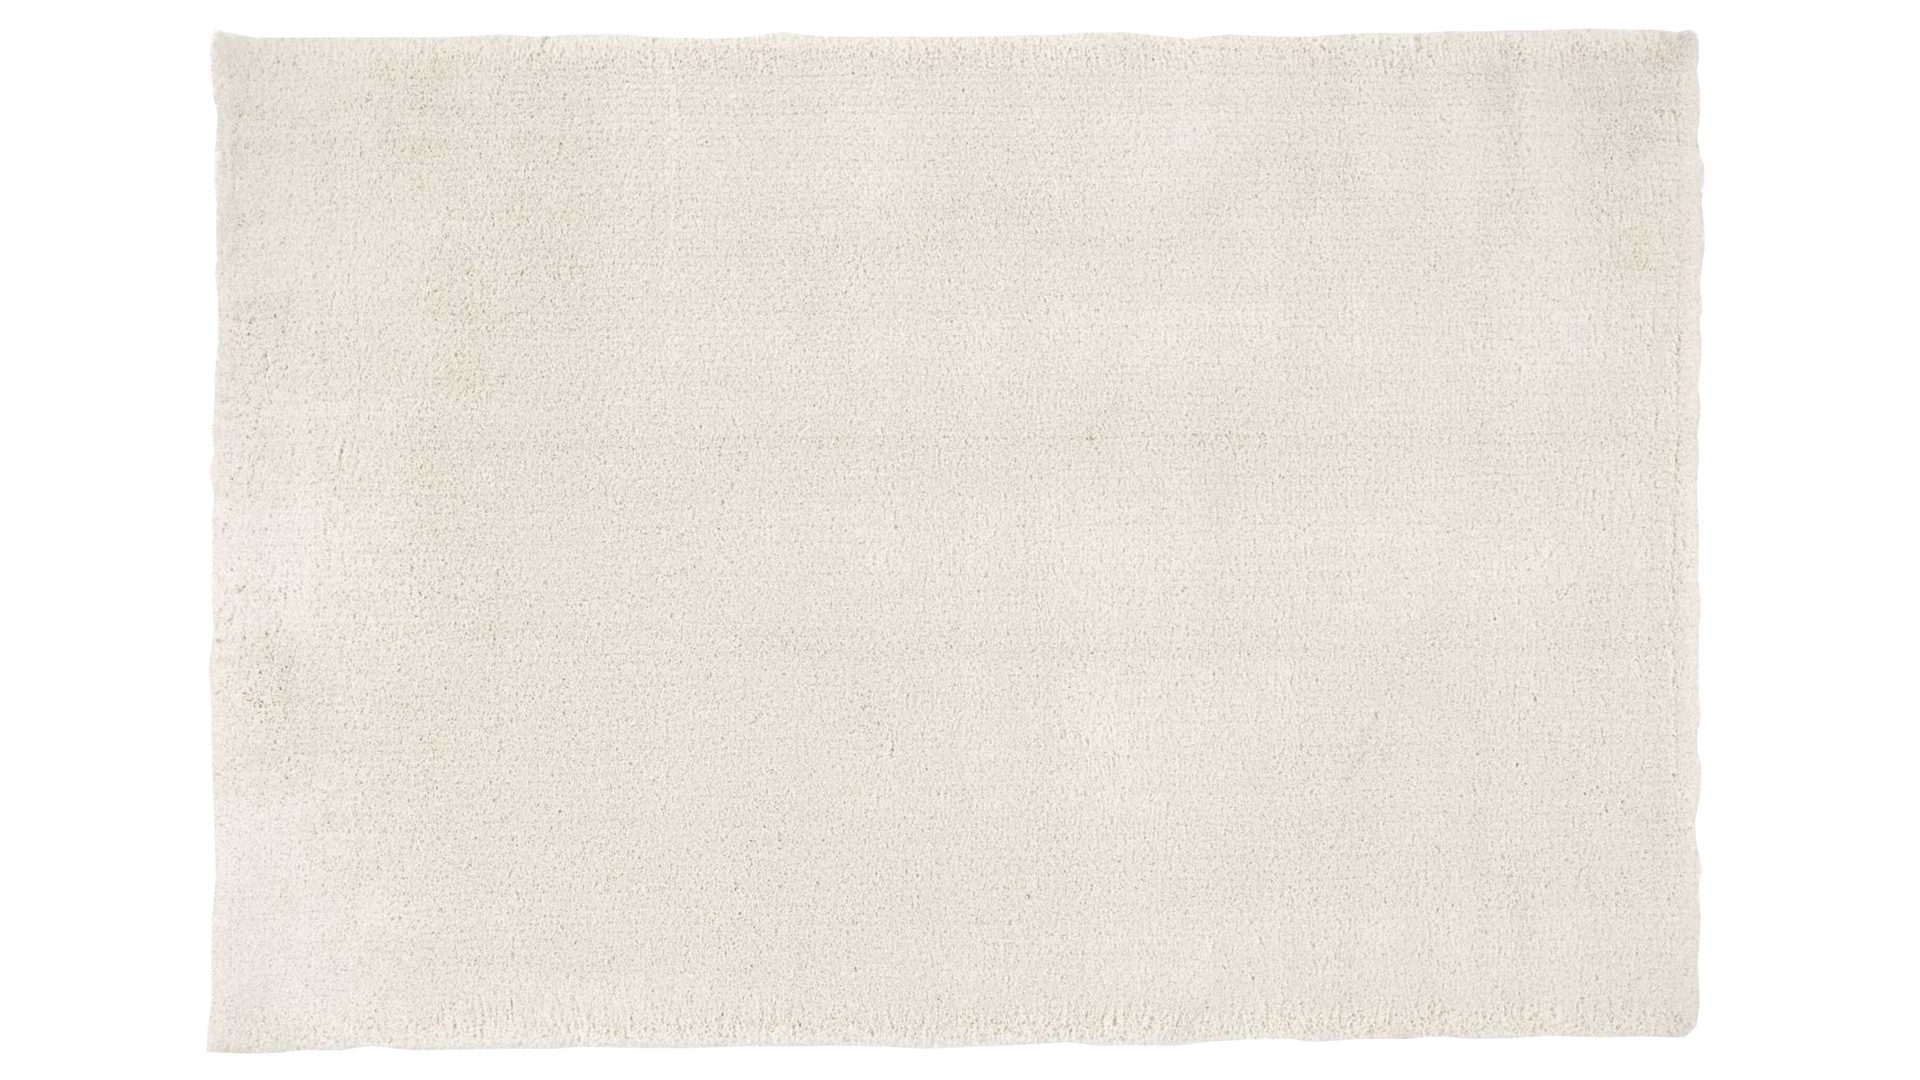 Shaggyteppich Oci aus Kunstfaser in Weiß Shaggyteppich Royal Shaggy für Ihre Wohnaccessoires cremefarbene Kunstfaser – ca. 200 x 290 cm